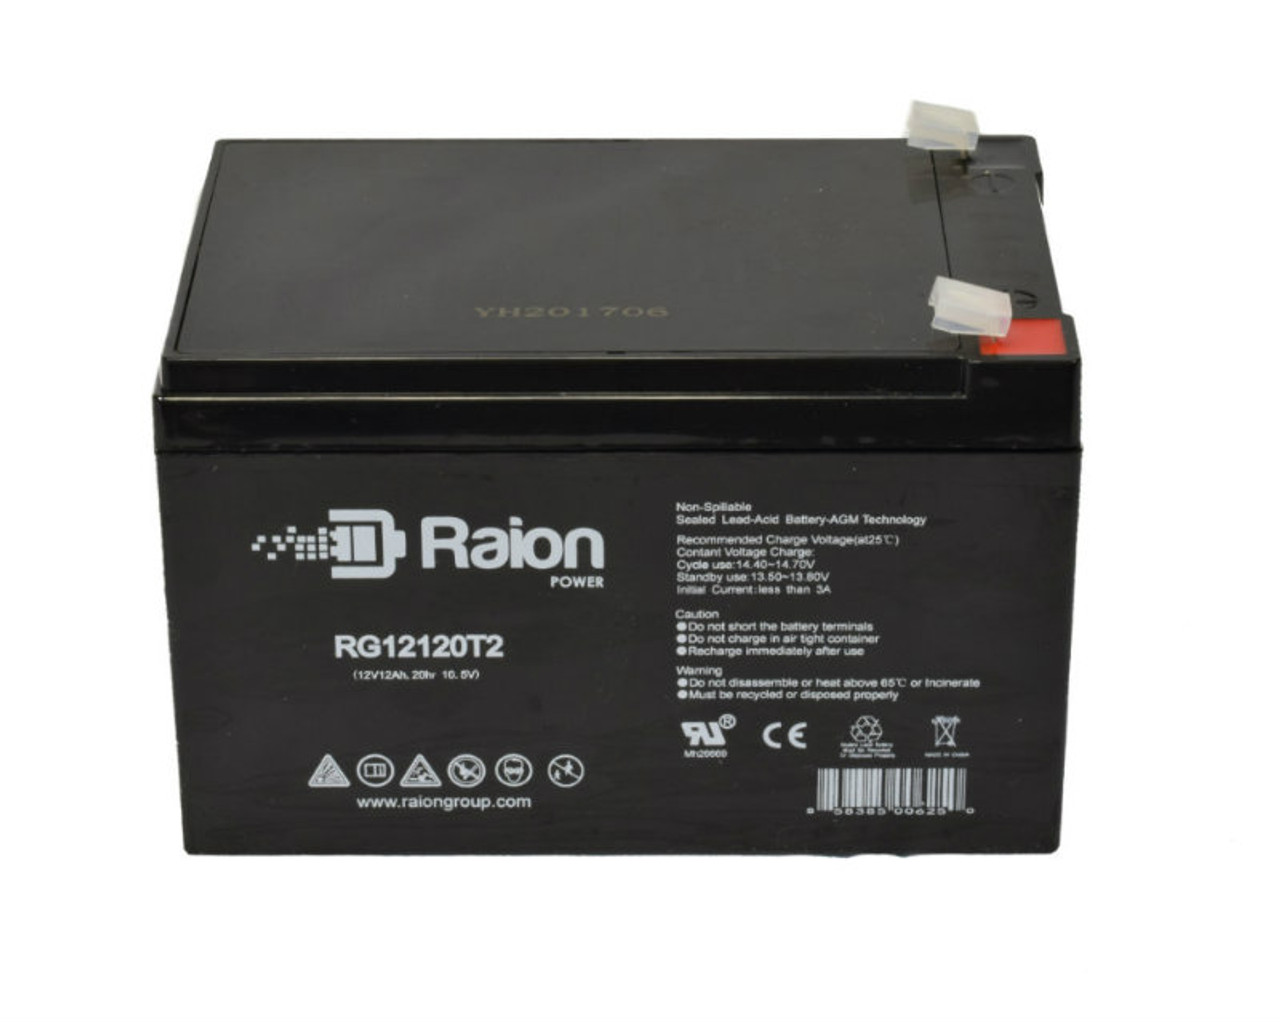 Raion Power RG12120T2 SLA Battery for Tao Motor Suk 500